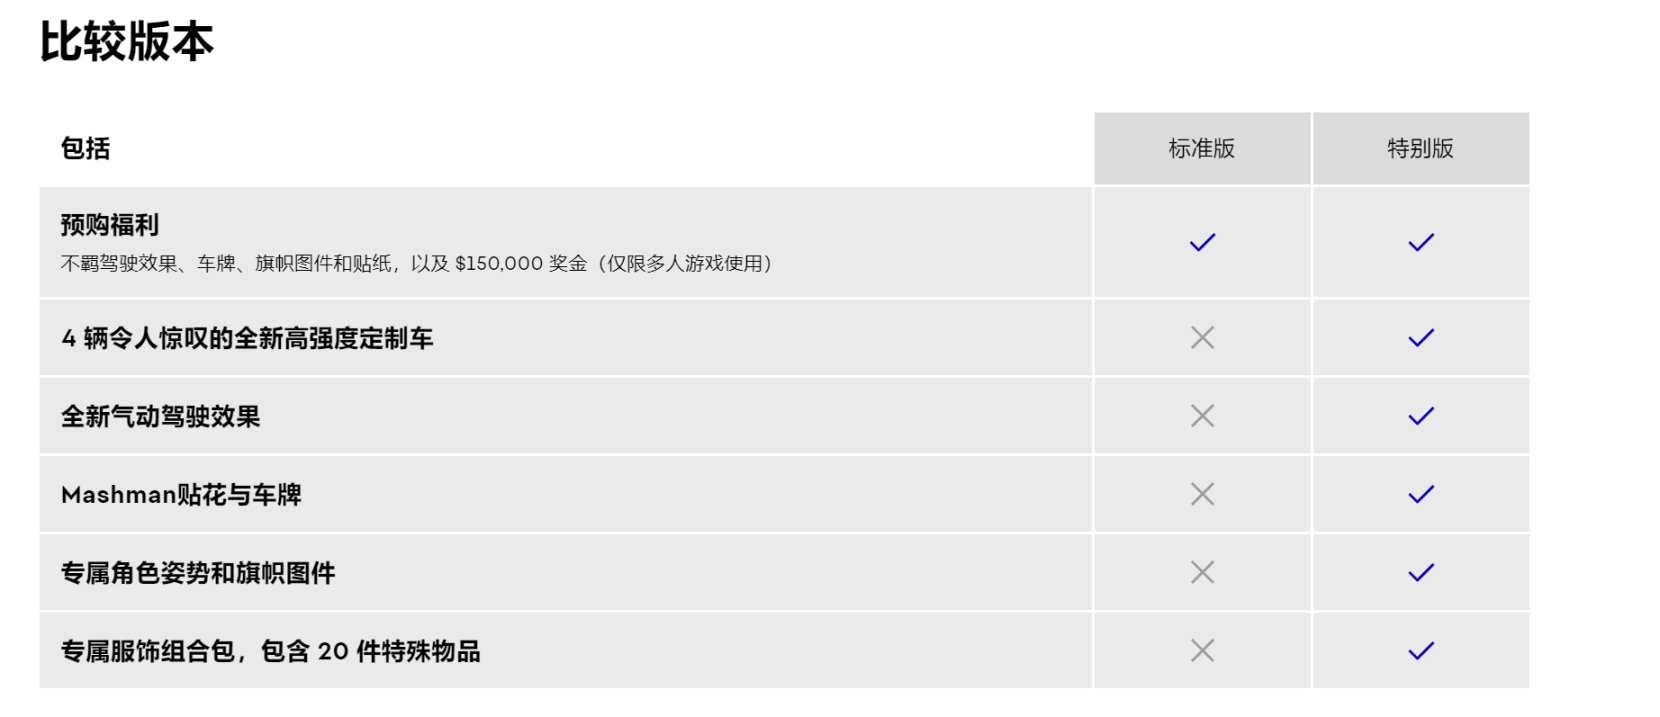 《极品飞车22:不羁》现已开启预购 国区标准版售价248元 12月2日发售-第5张